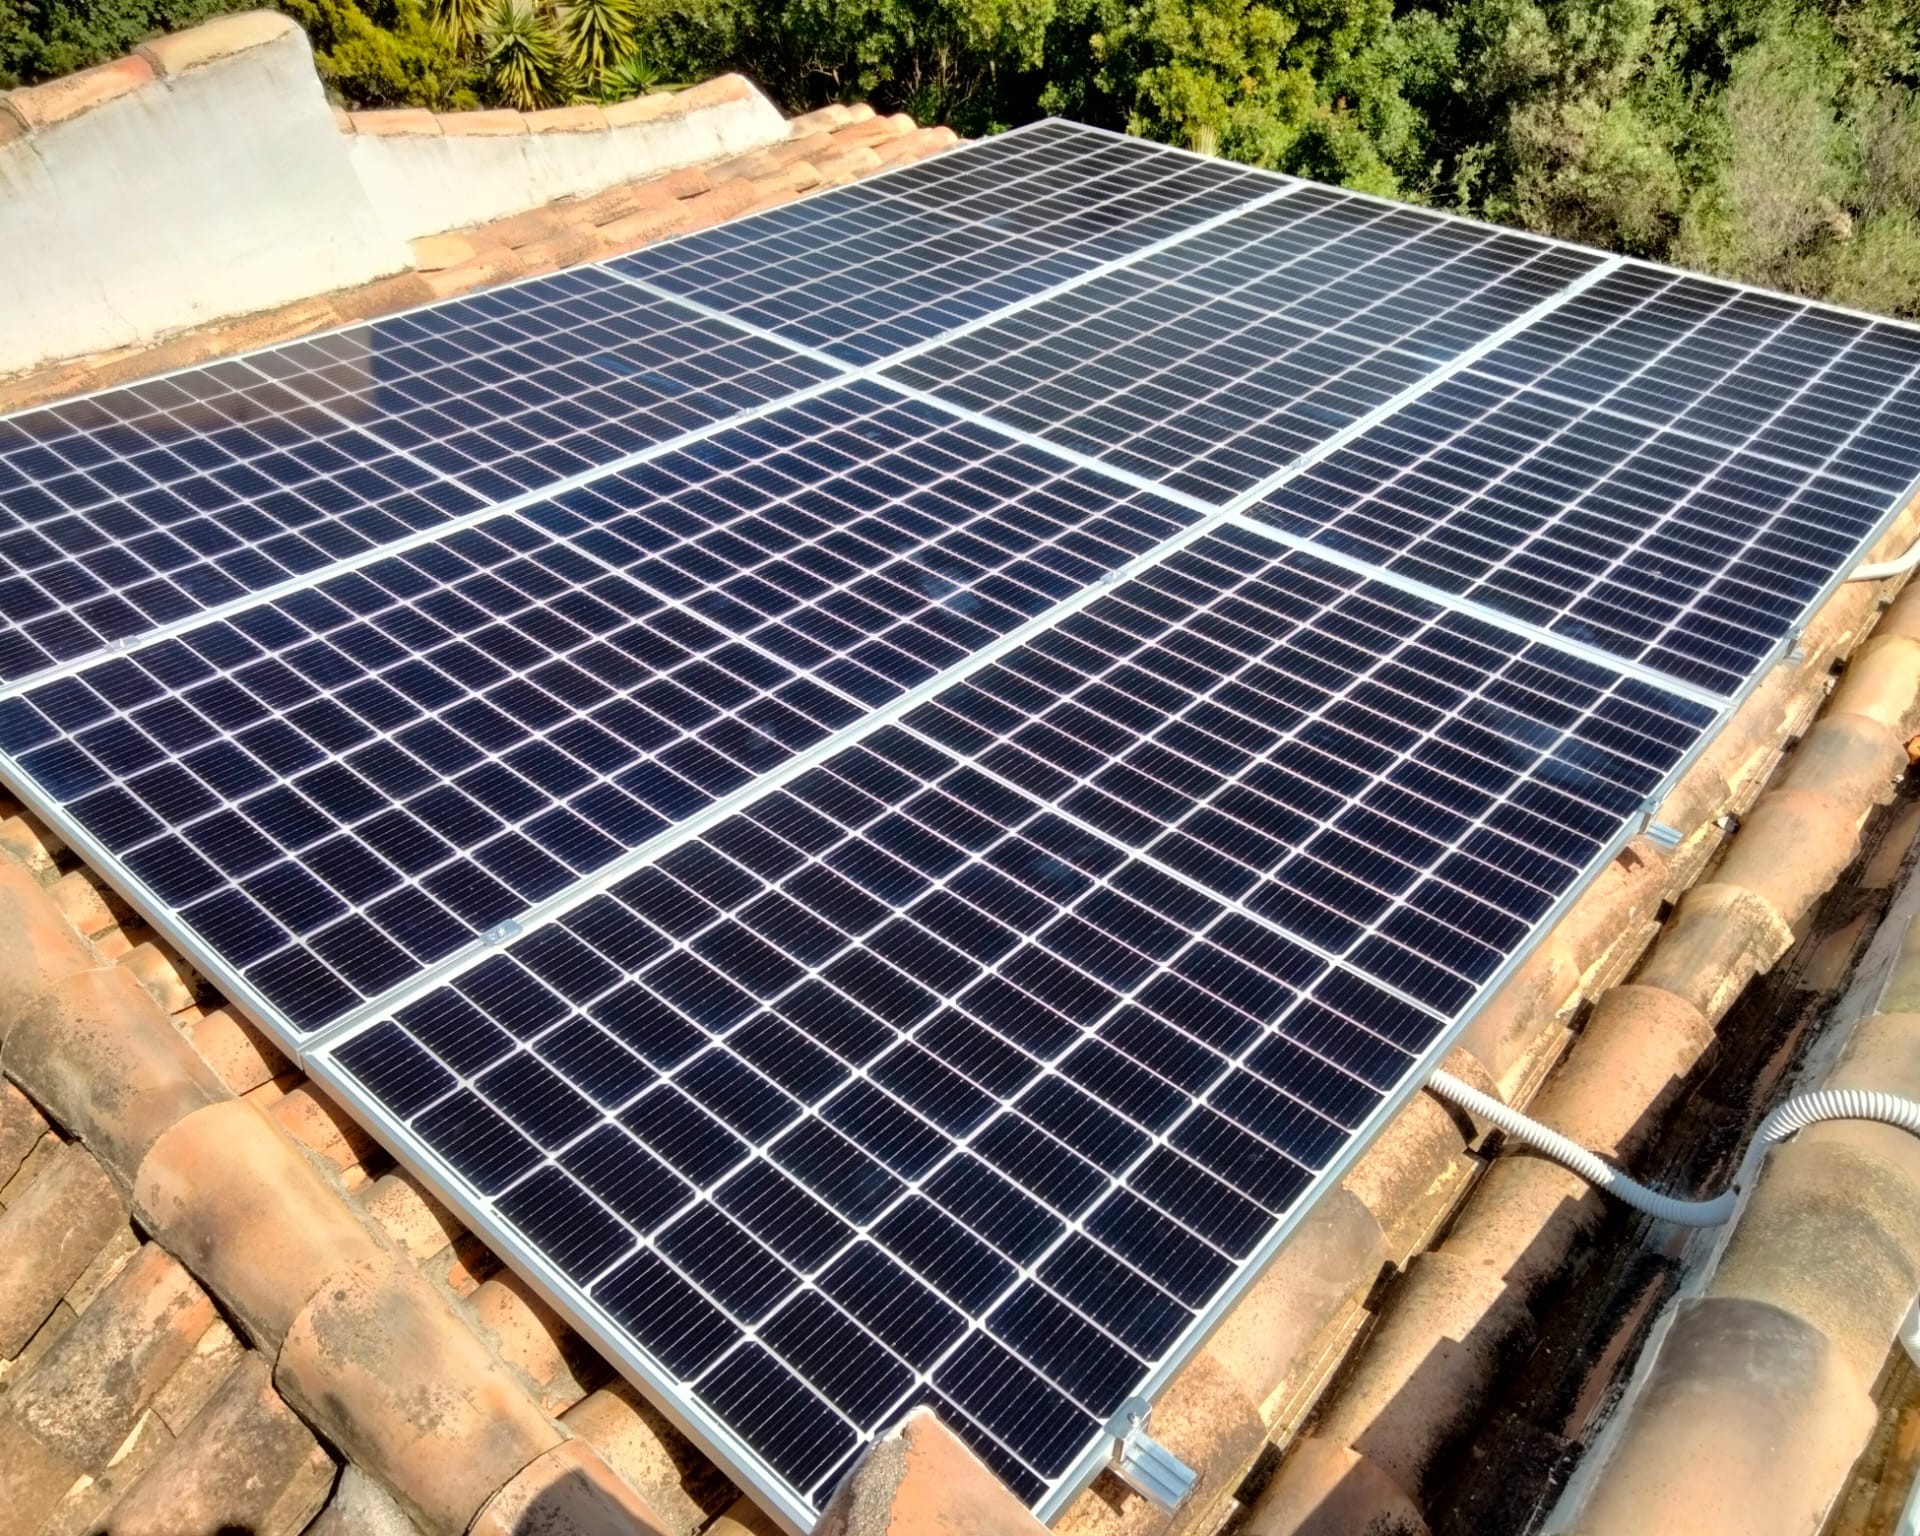 11X 460 wp Solar Panels, Rafol de Almunia, Alicante (Hybrid system)